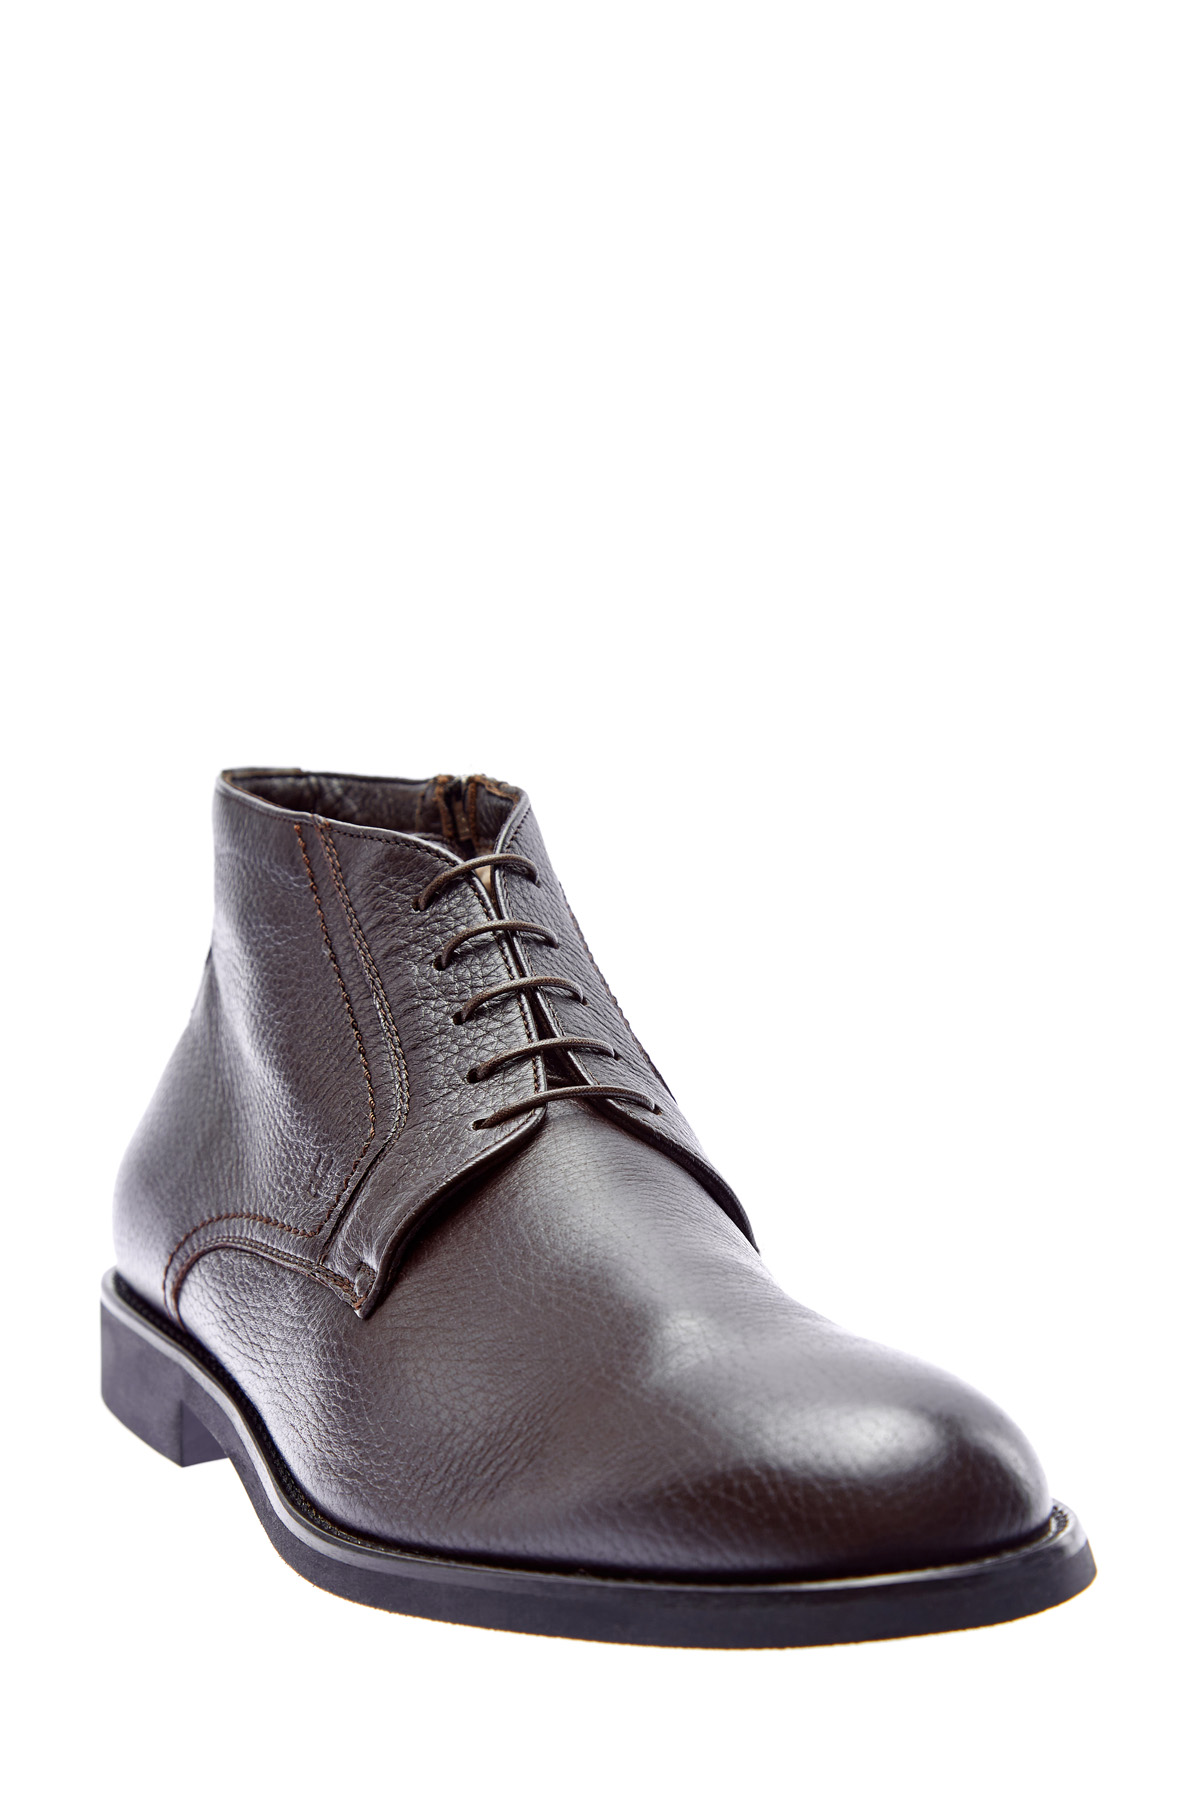 Высокие ботинки-дерби ручной работы из кожи оленя MORESCHI, цвет коричневый, размер 42.5;43;43.5 - фото 3